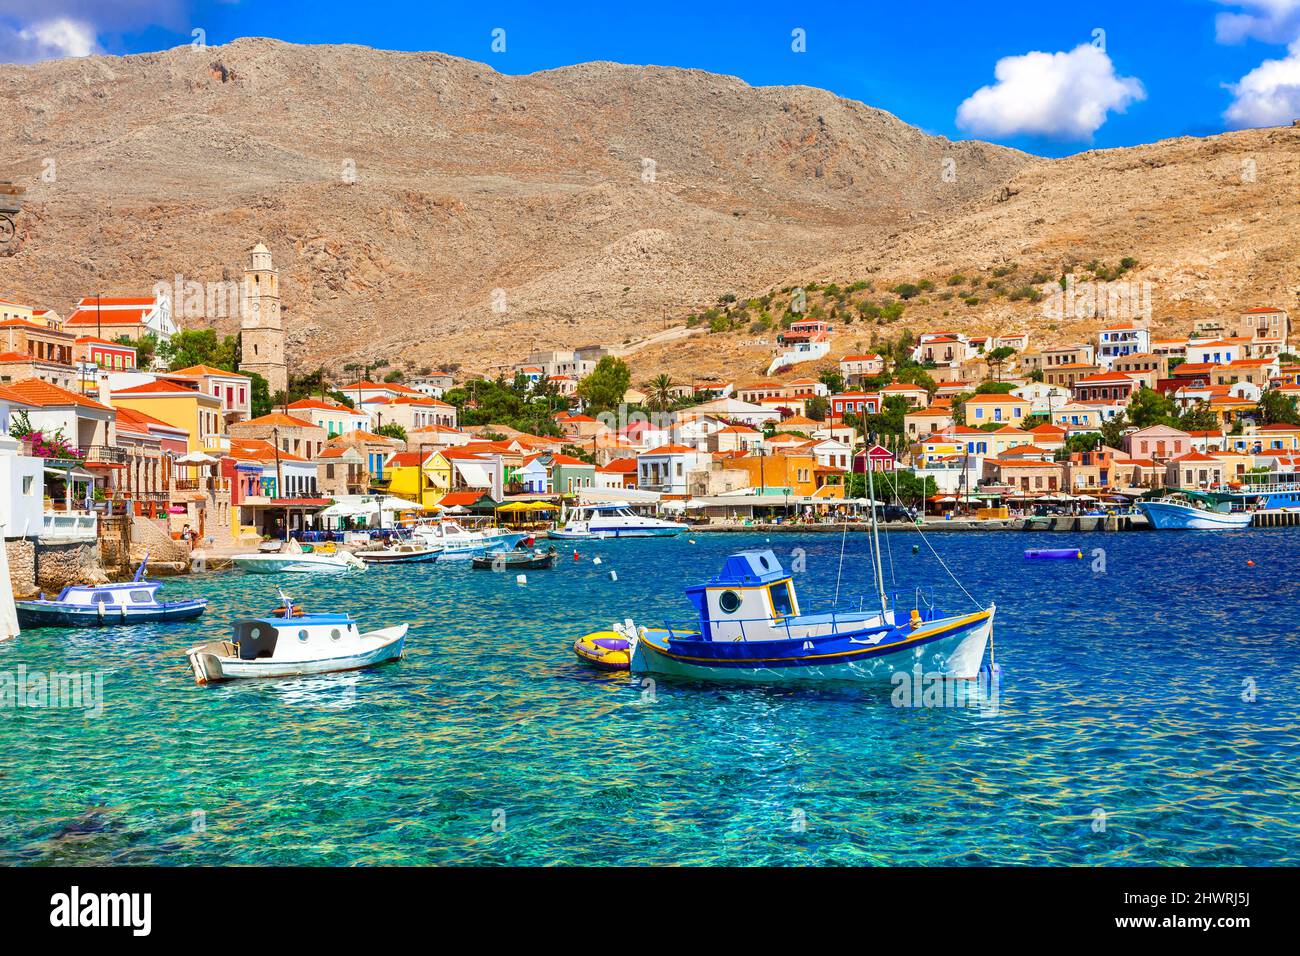 Villaggi tradizionali di pescatori della Grecia - incantevole isola di Chalki (Halki) nel Dodecaneso. Vista con barche tipiche e case colorate Foto Stock